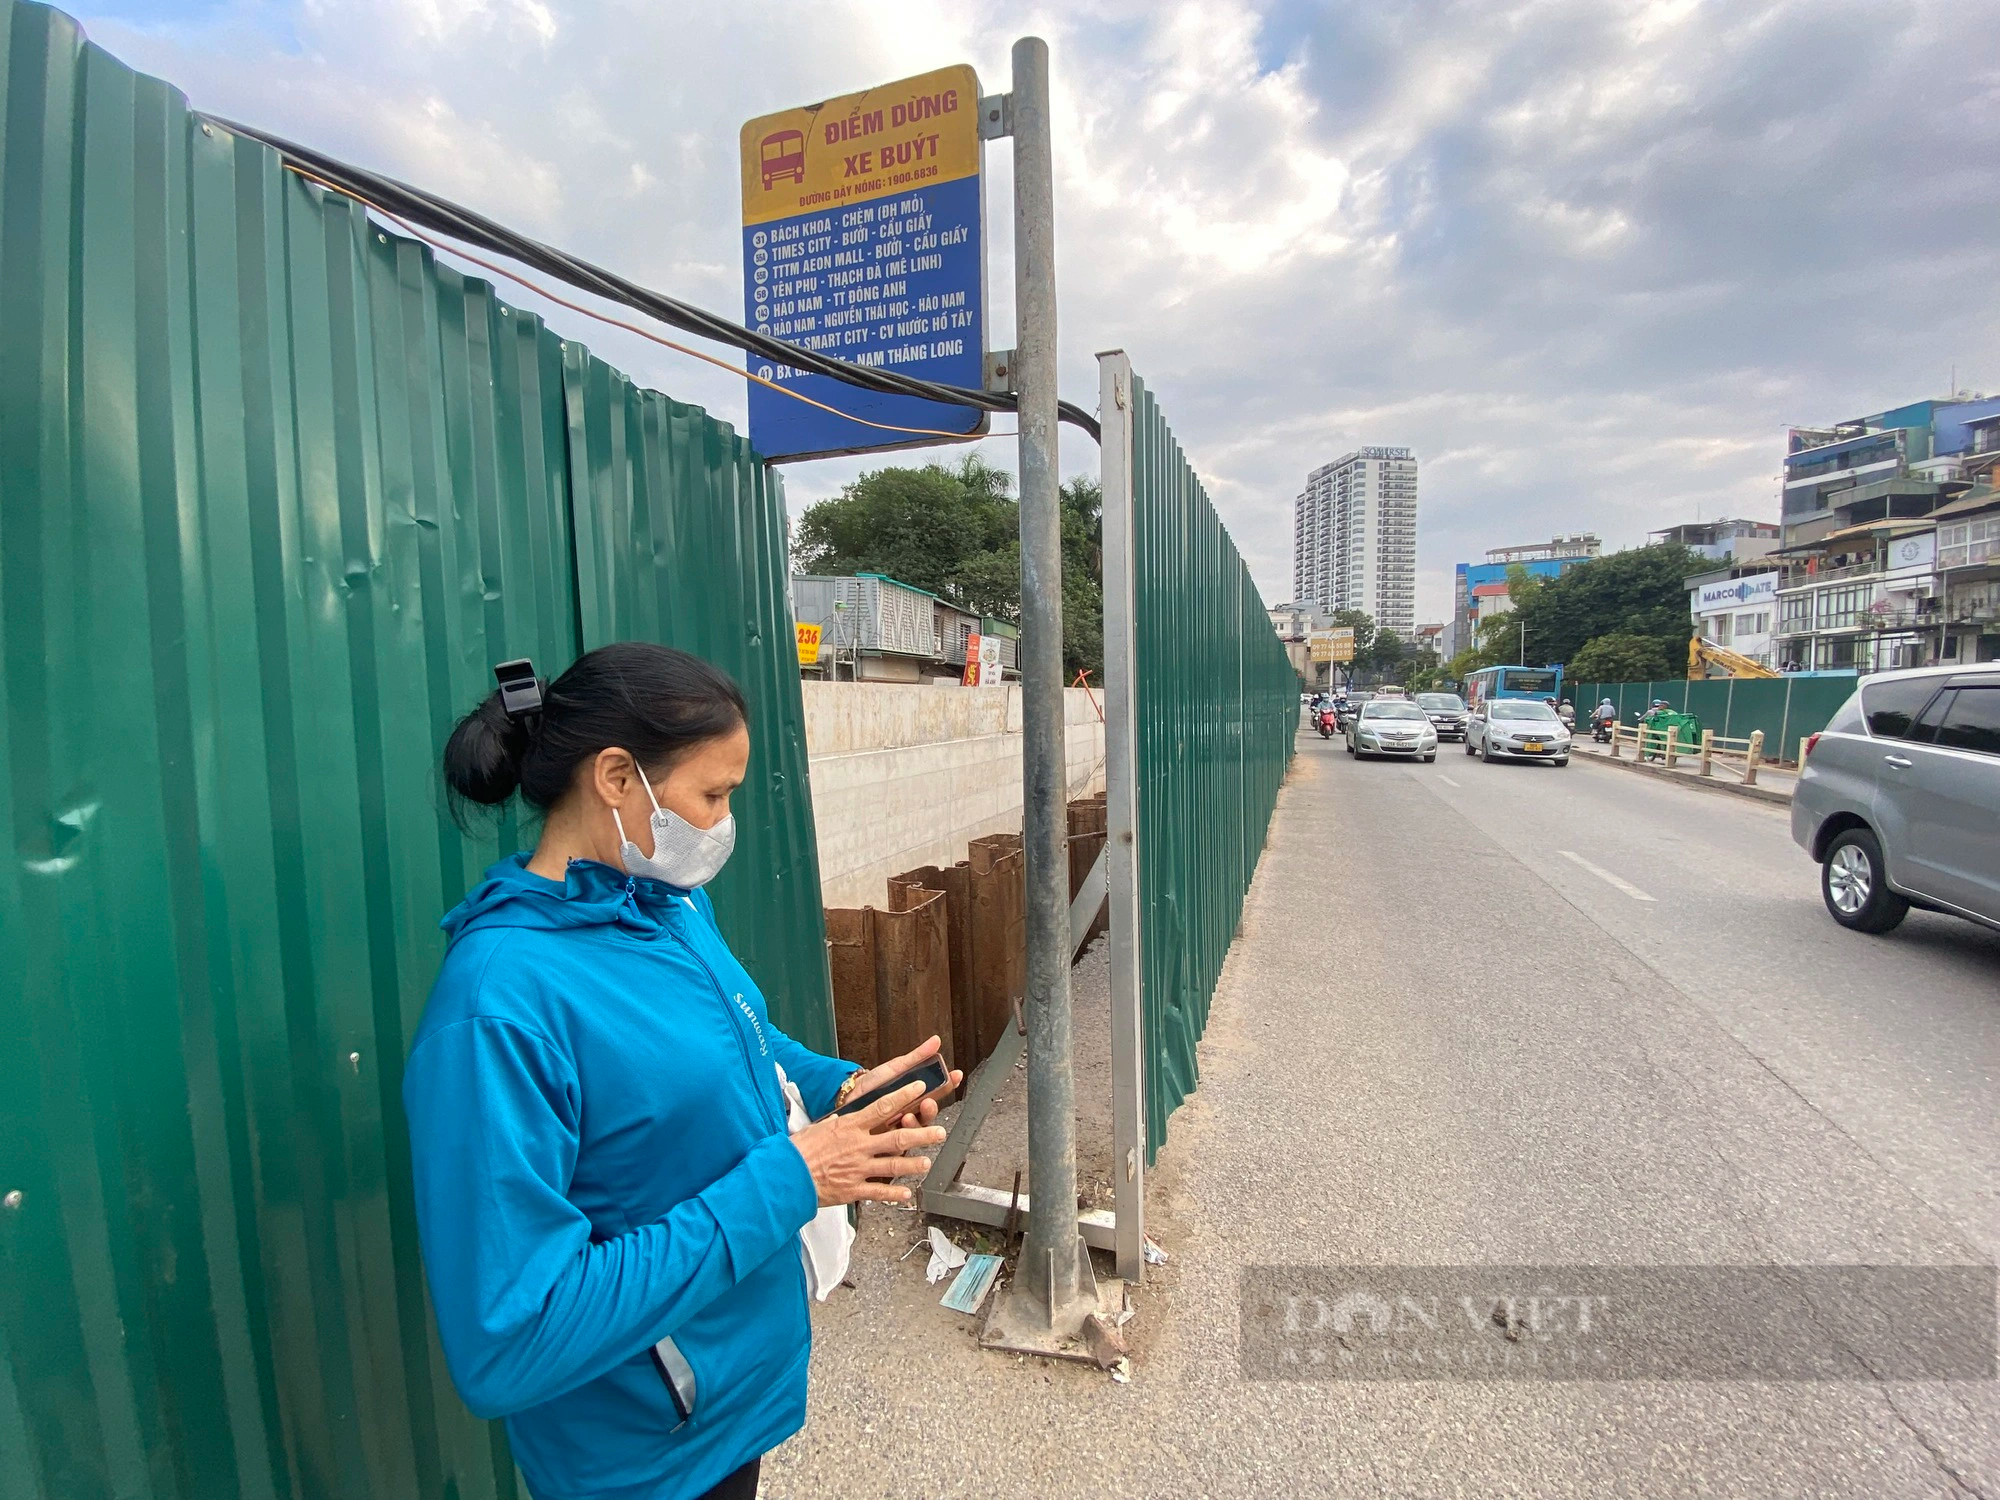 Hà Nội: Dự án chậm tiến độ khiến người dân phải đón xe buýt giữa đường - Ảnh 3.